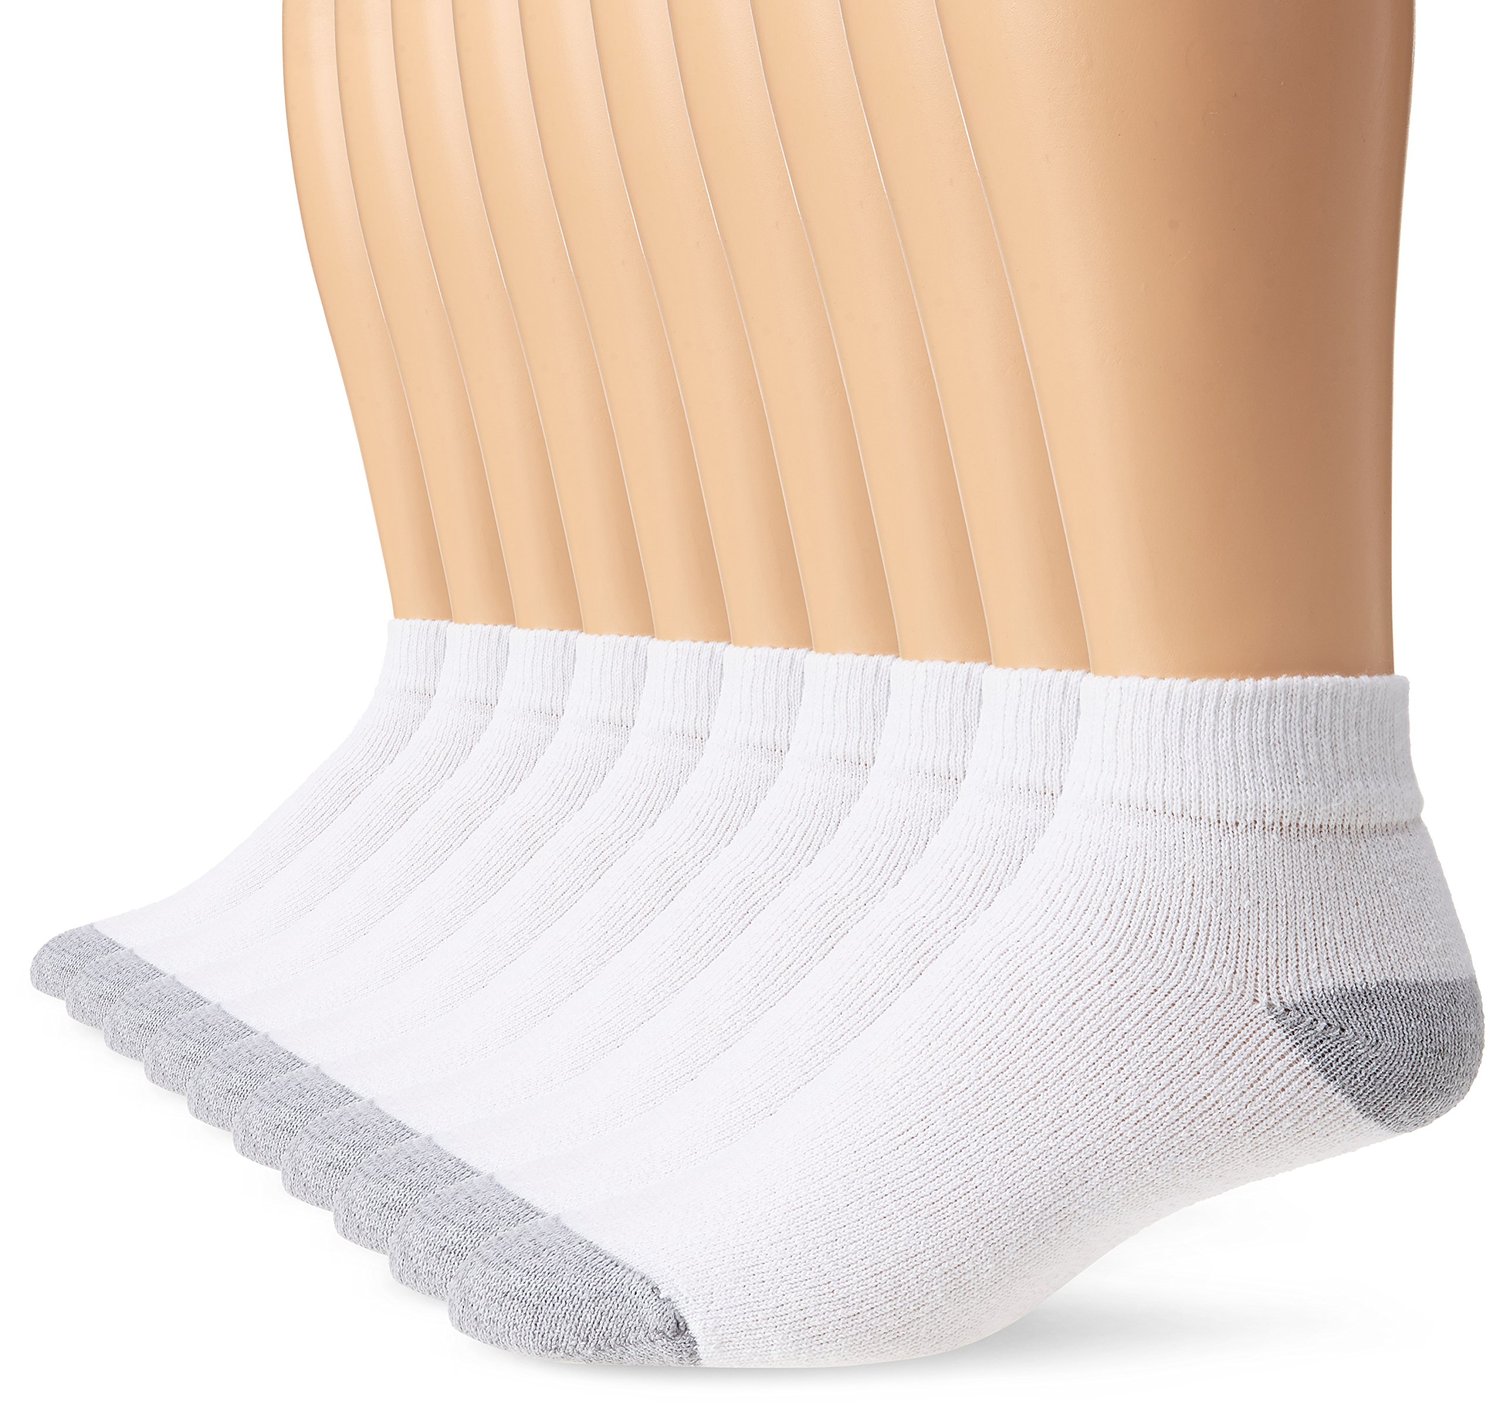 Men's Ankle Socks, 10 Pack - image 1 of 3